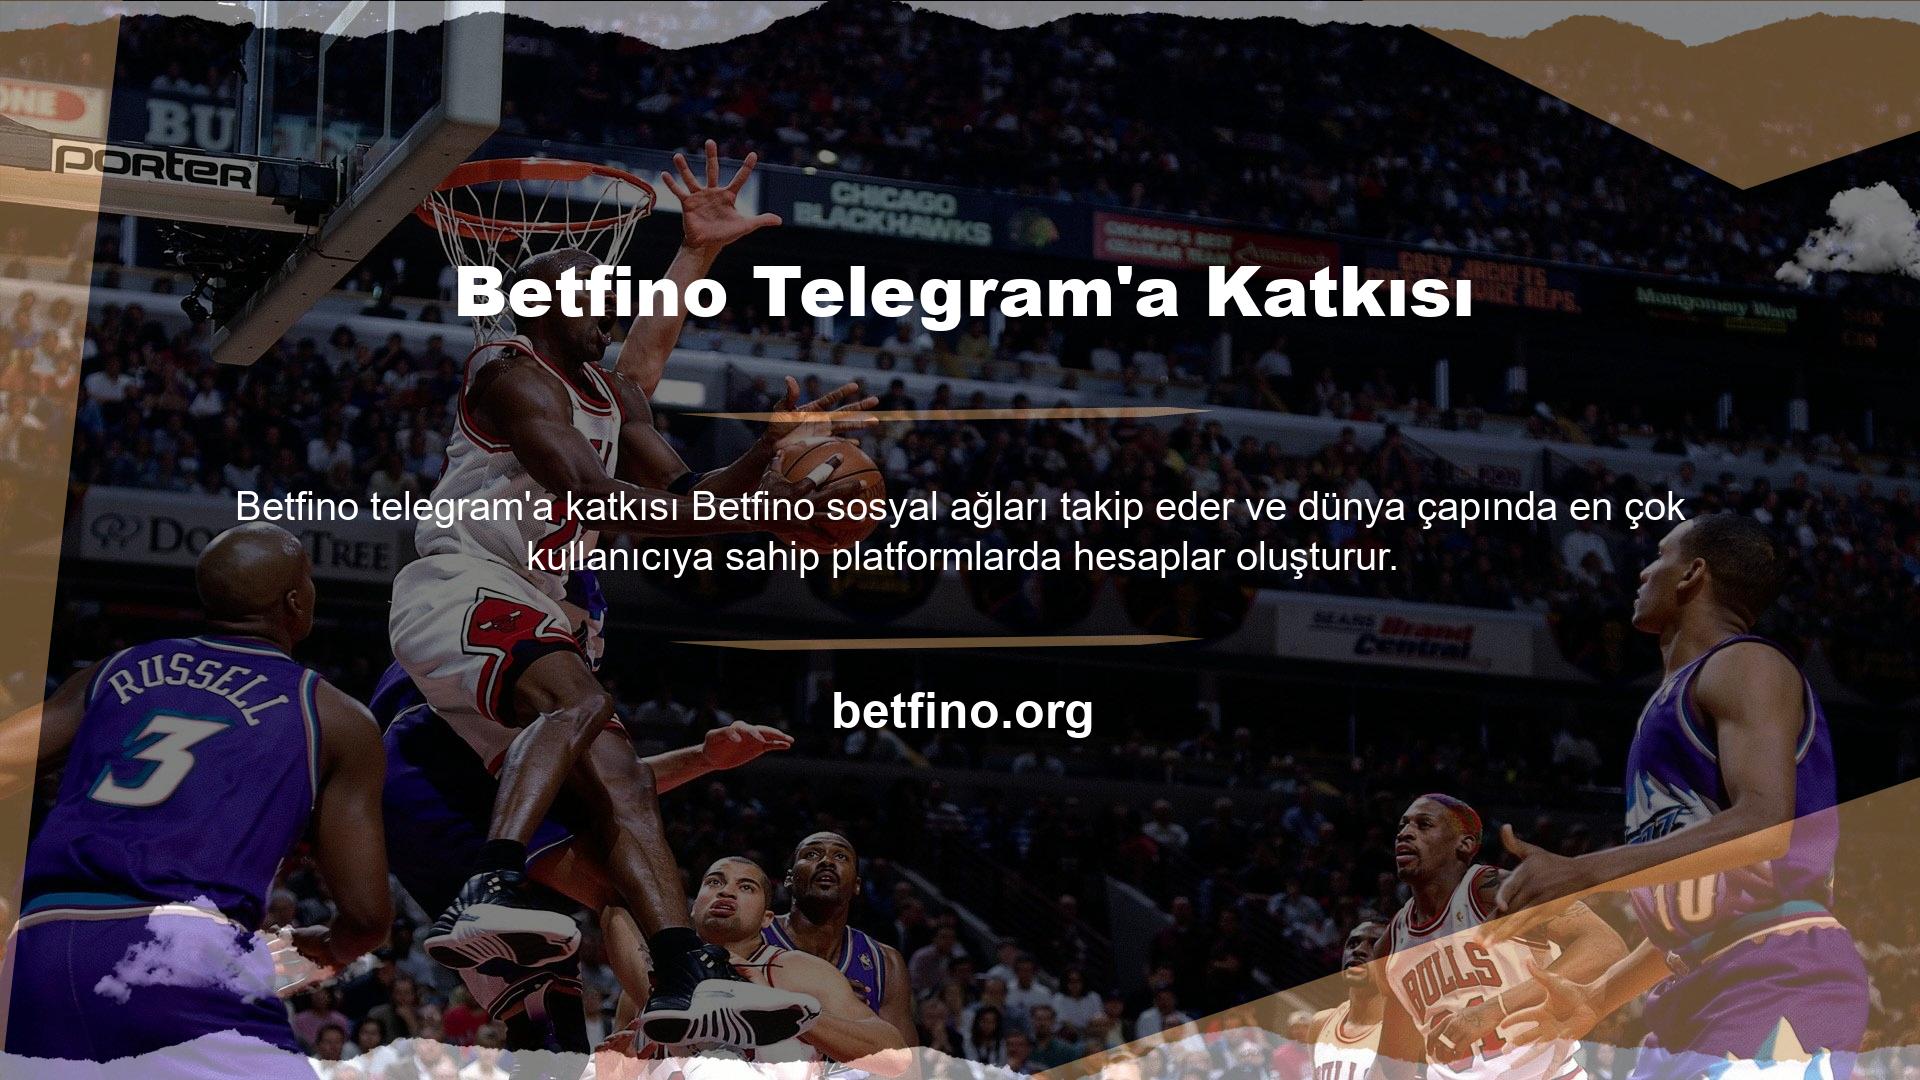 Son yılların en popüler sosyal medya ağı olan Telegram, kendisini oluşturan Betfino hesabı ile paylaşımlarda bulunuyor